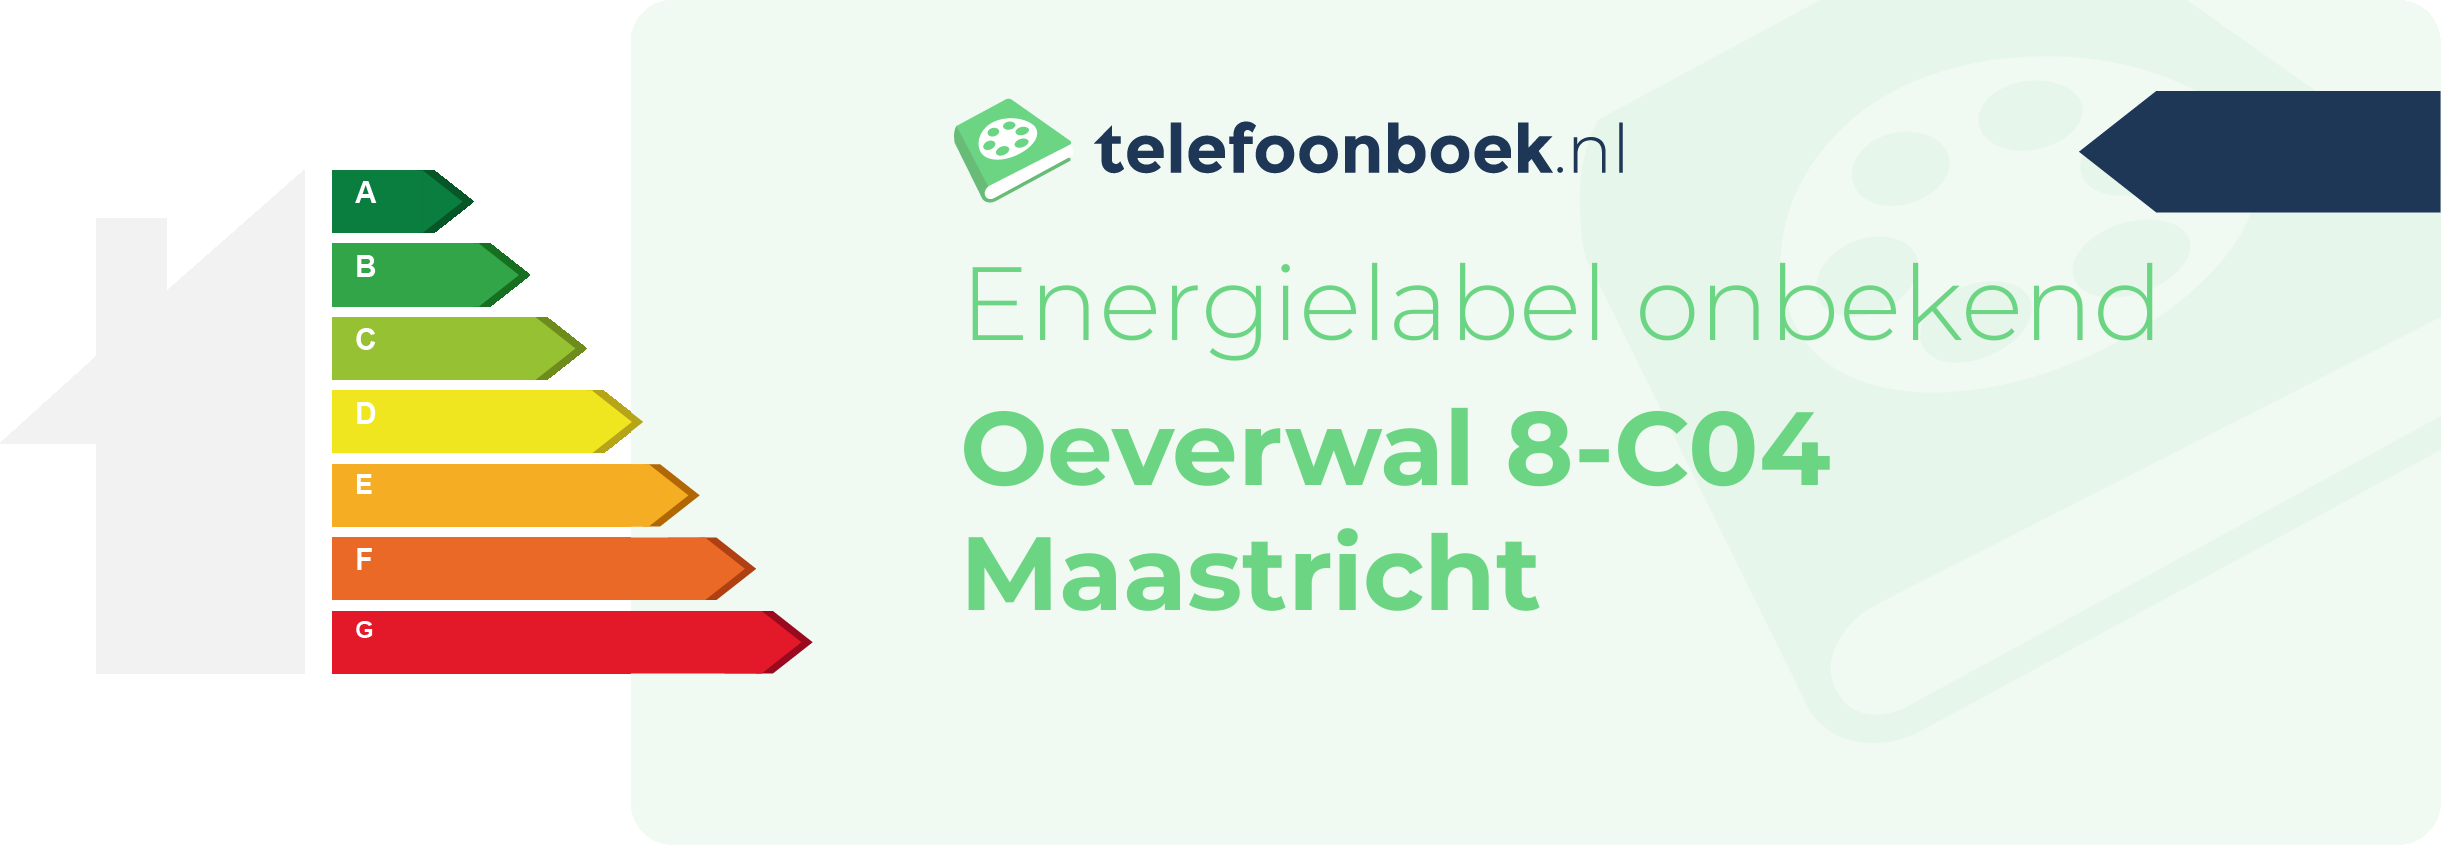 Energielabel Oeverwal 8-C04 Maastricht